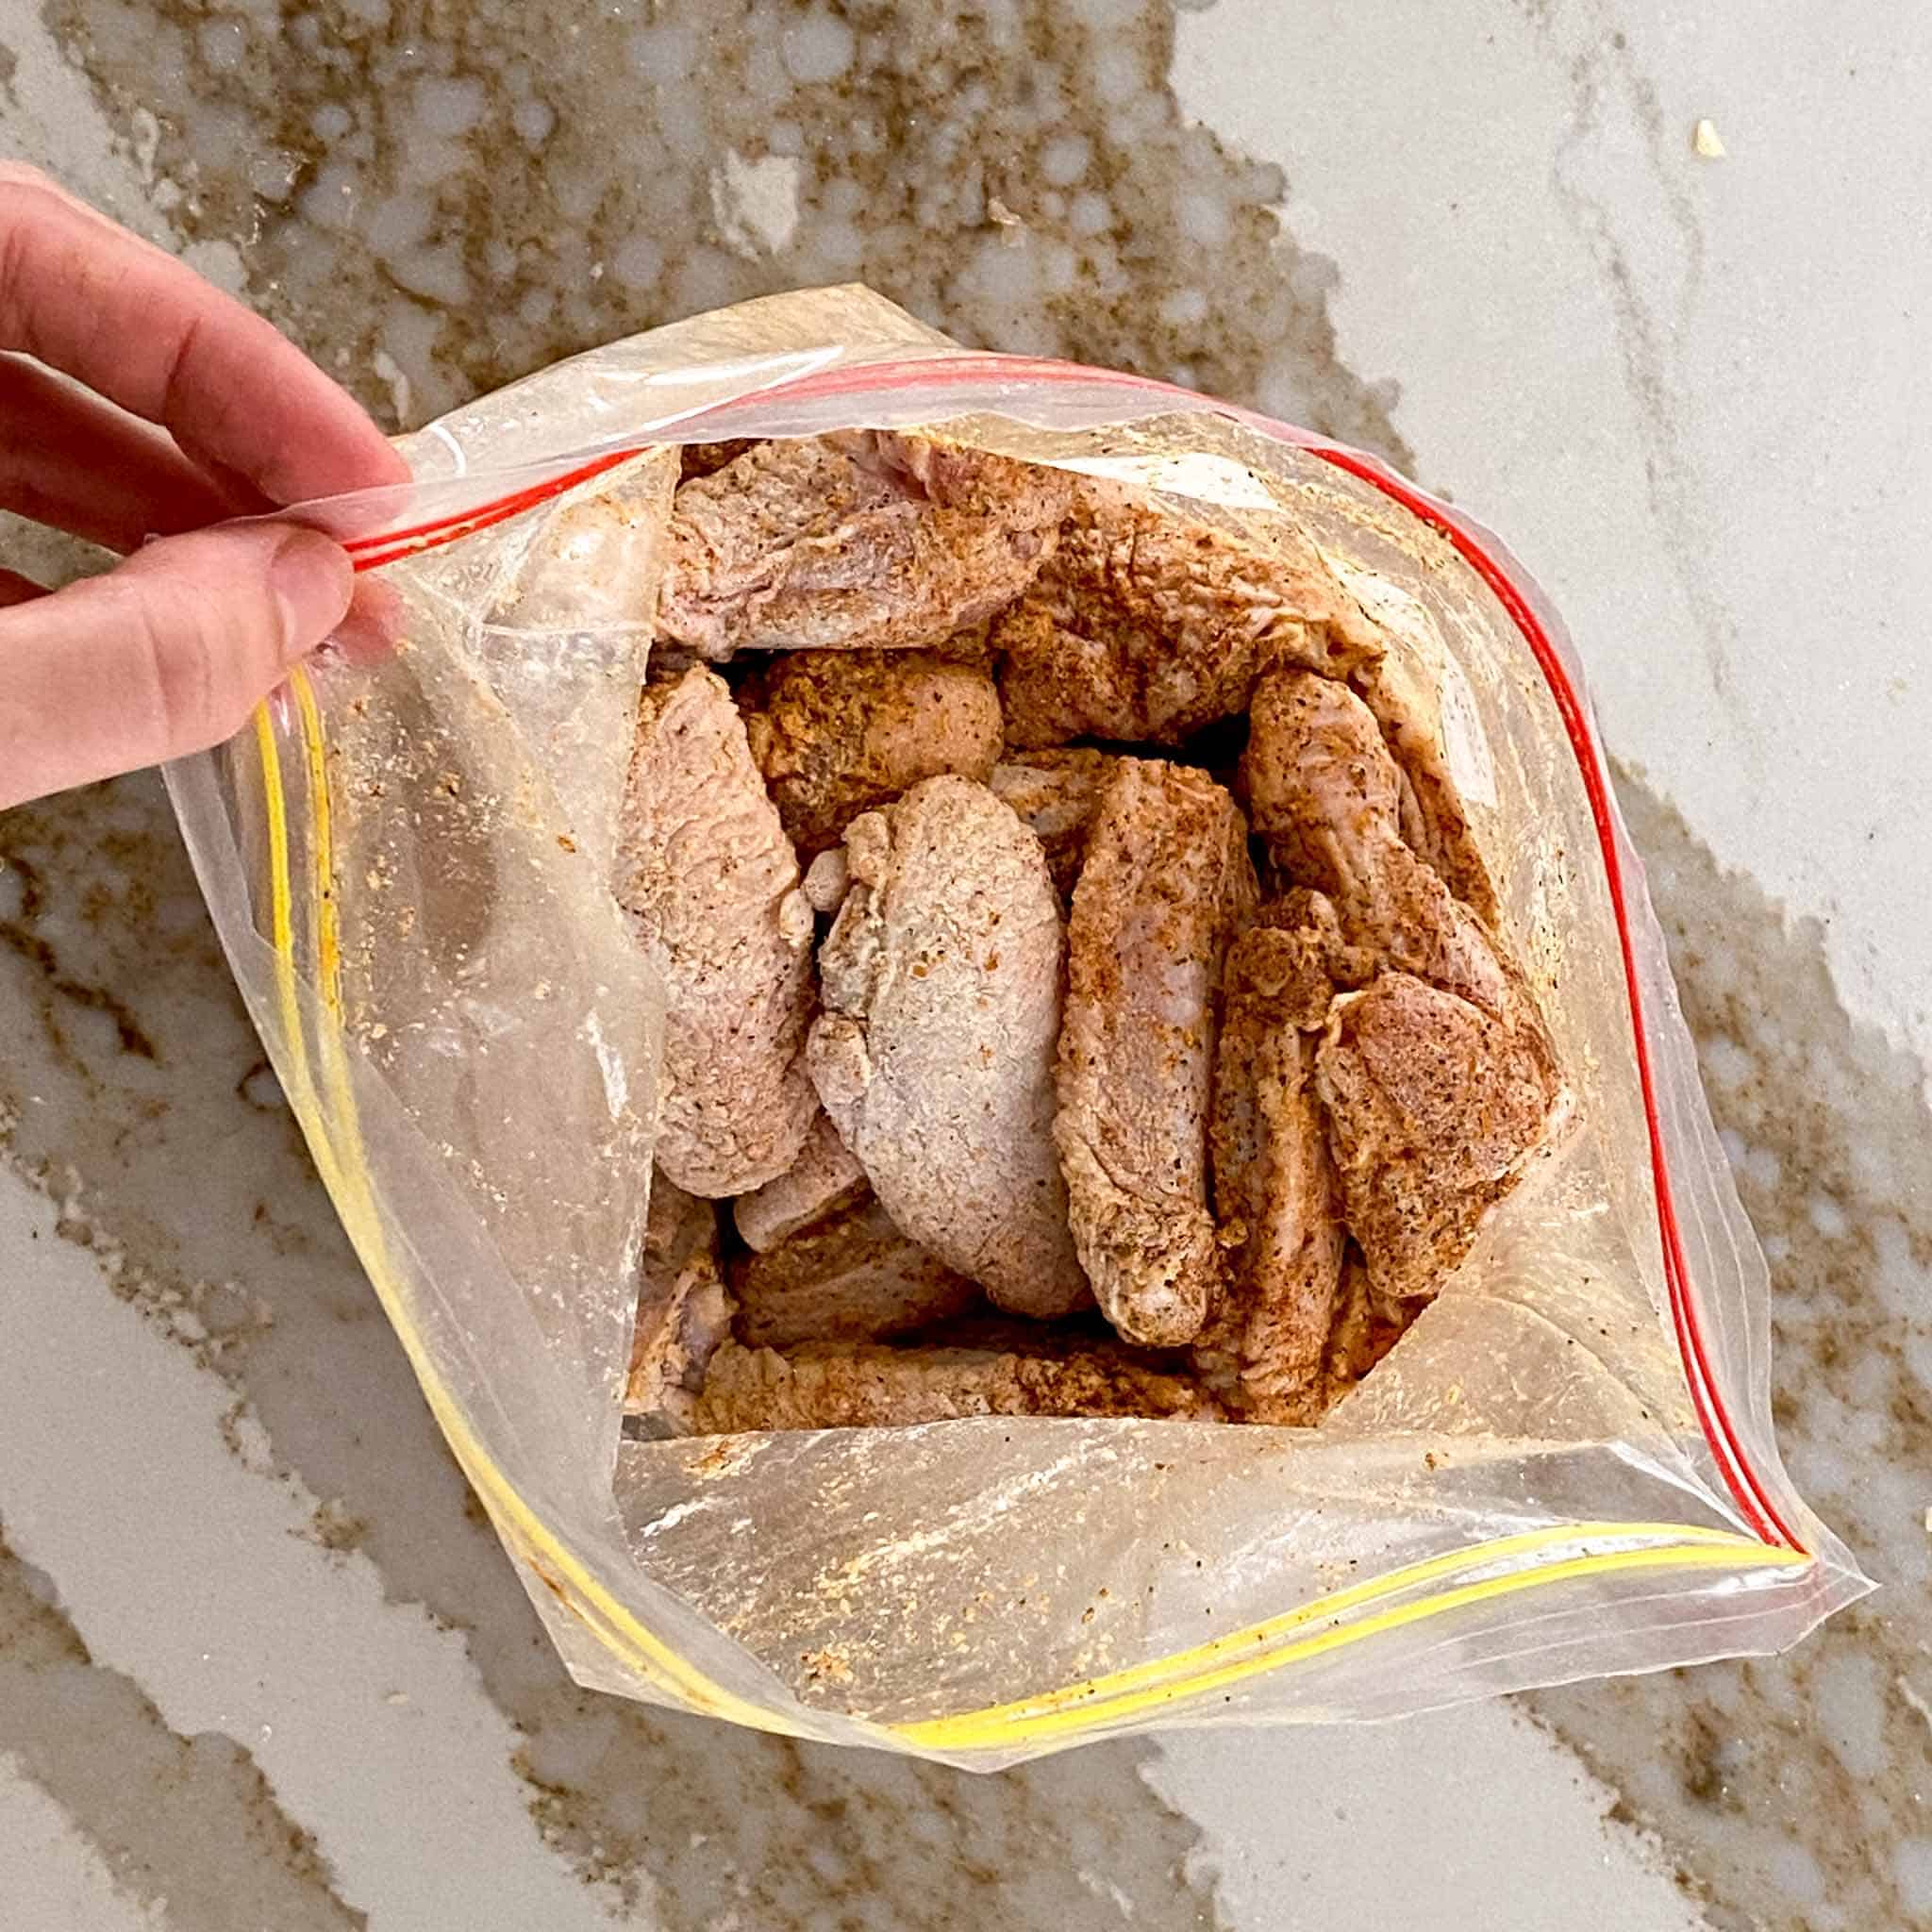 Raw chicken wings being seasoned in a large ziplock bag.